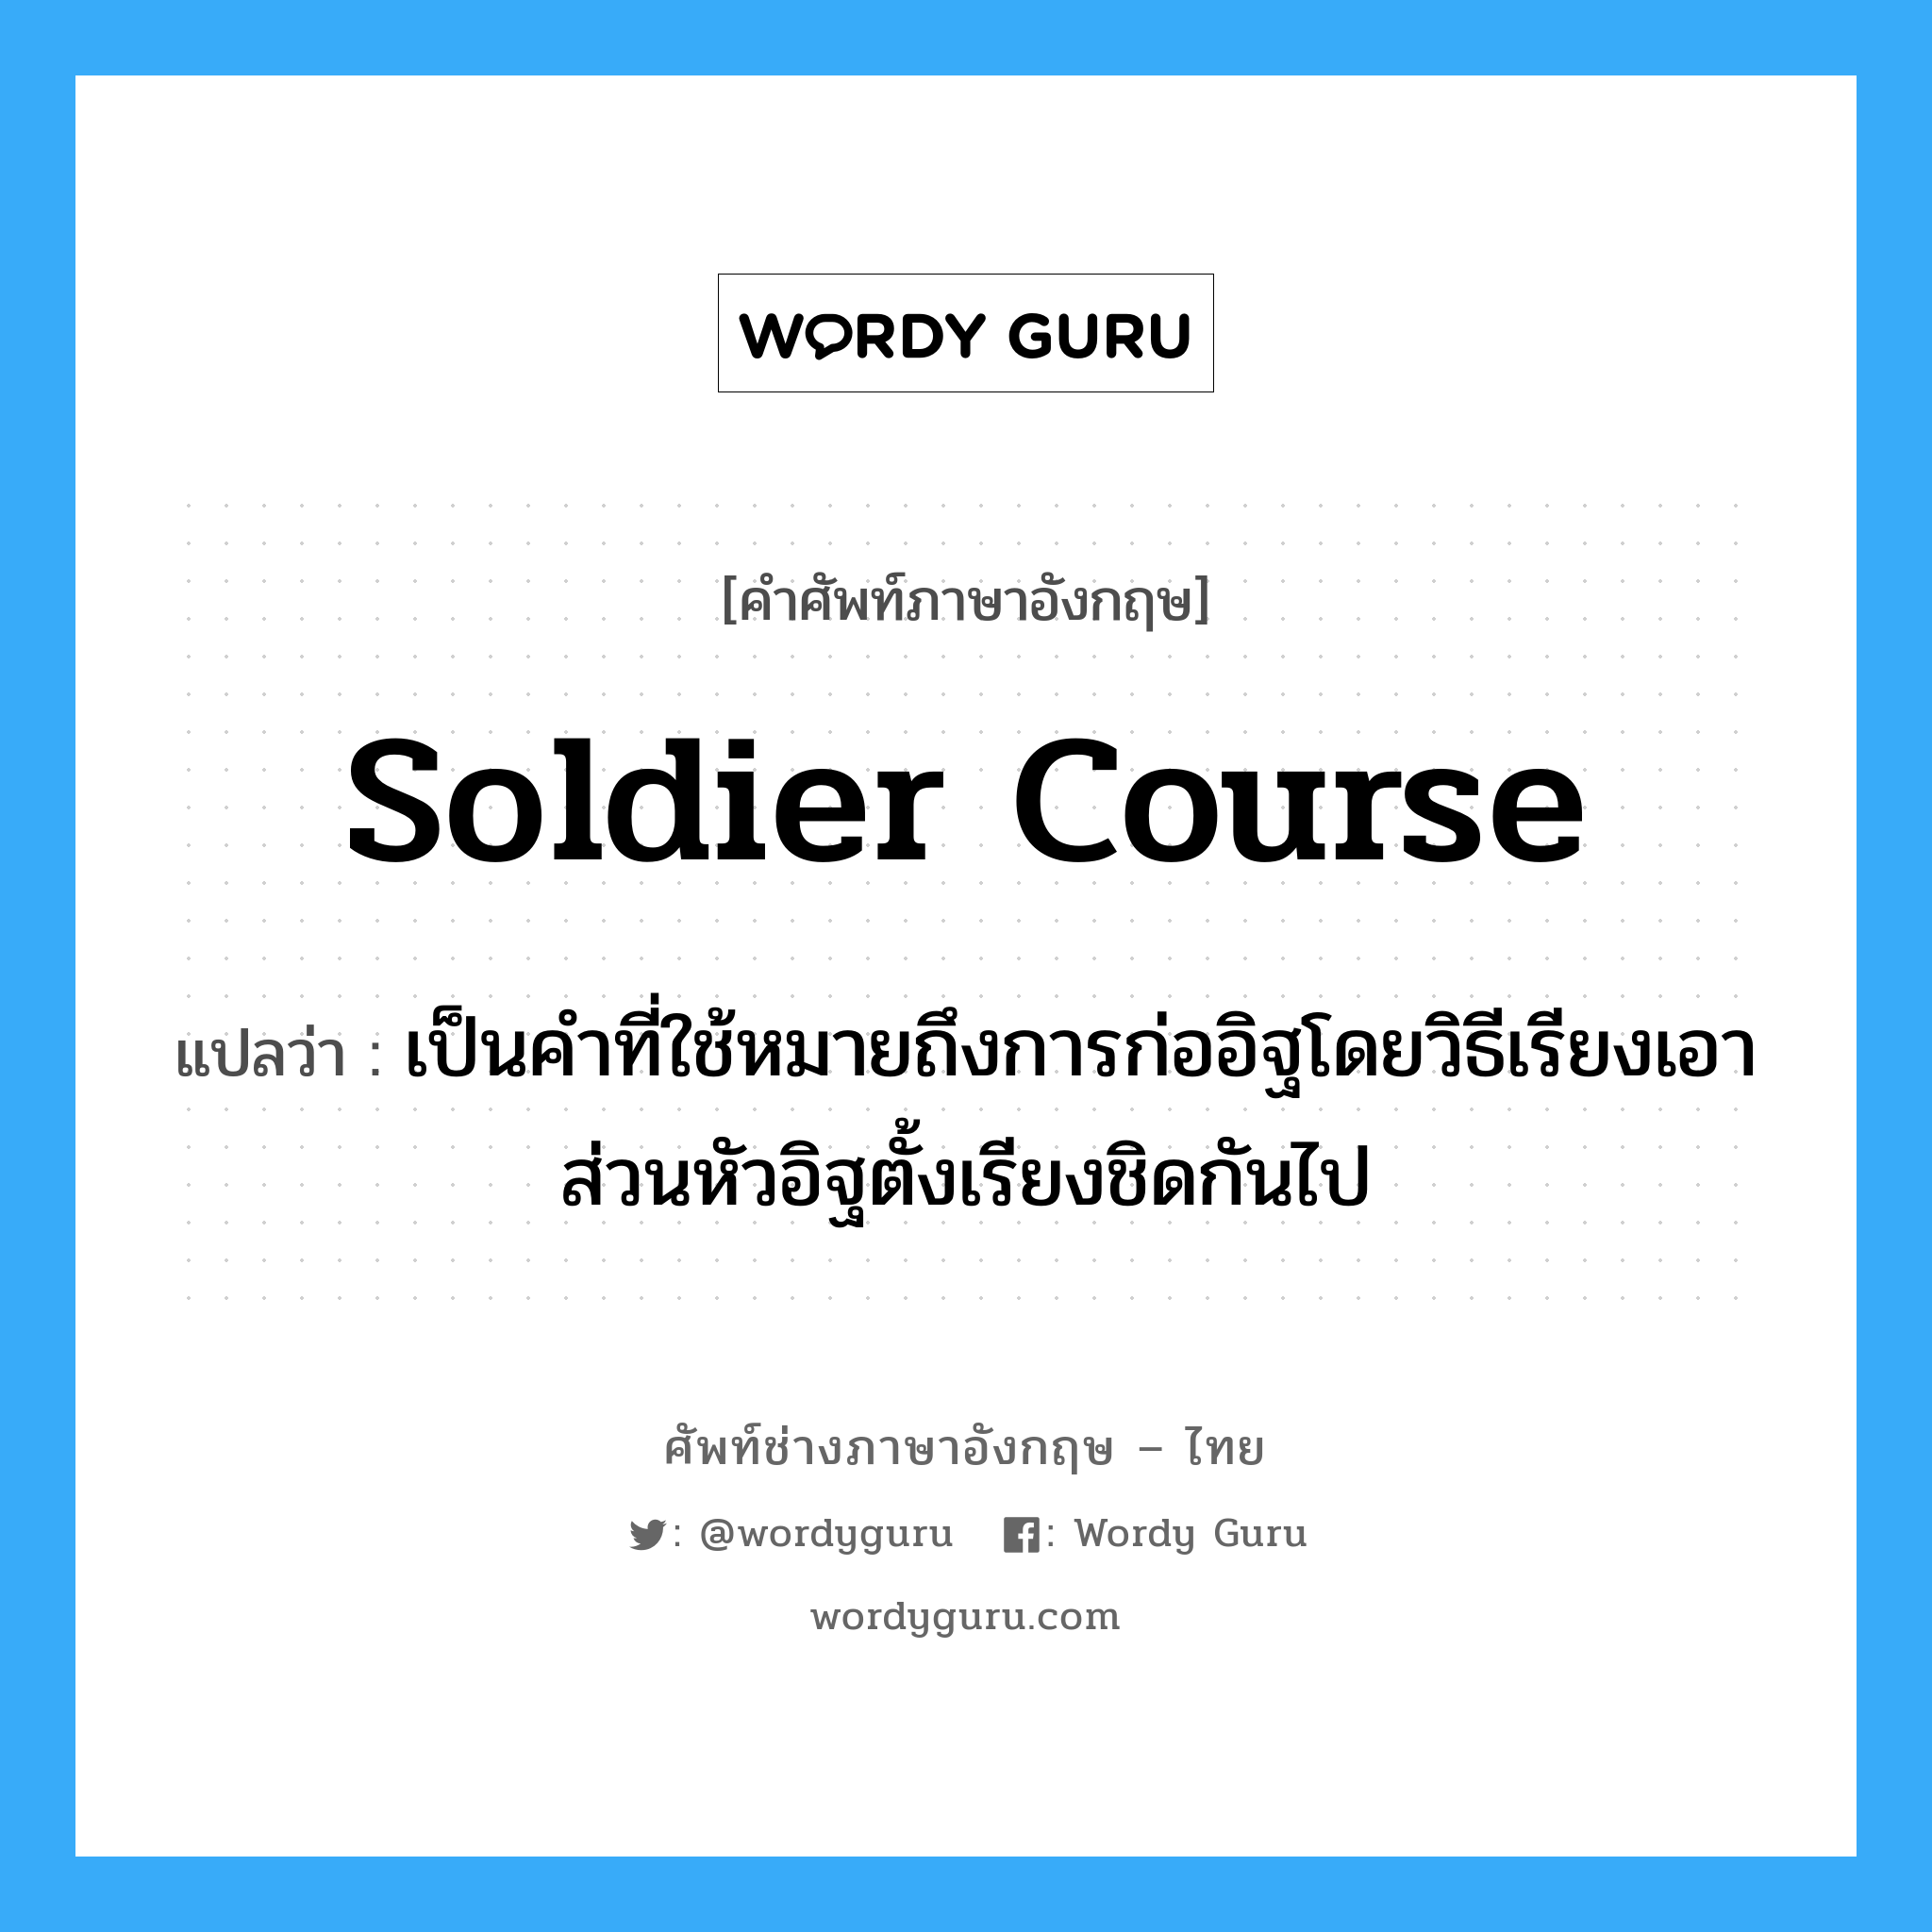 soldier course แปลว่า?, คำศัพท์ช่างภาษาอังกฤษ - ไทย soldier course คำศัพท์ภาษาอังกฤษ soldier course แปลว่า เป็นคำที่ใช้หมายถึงการก่ออิฐโดยวิธีเรียงเอา ส่วนหัวอิฐตั้งเรียงชิดกันไป